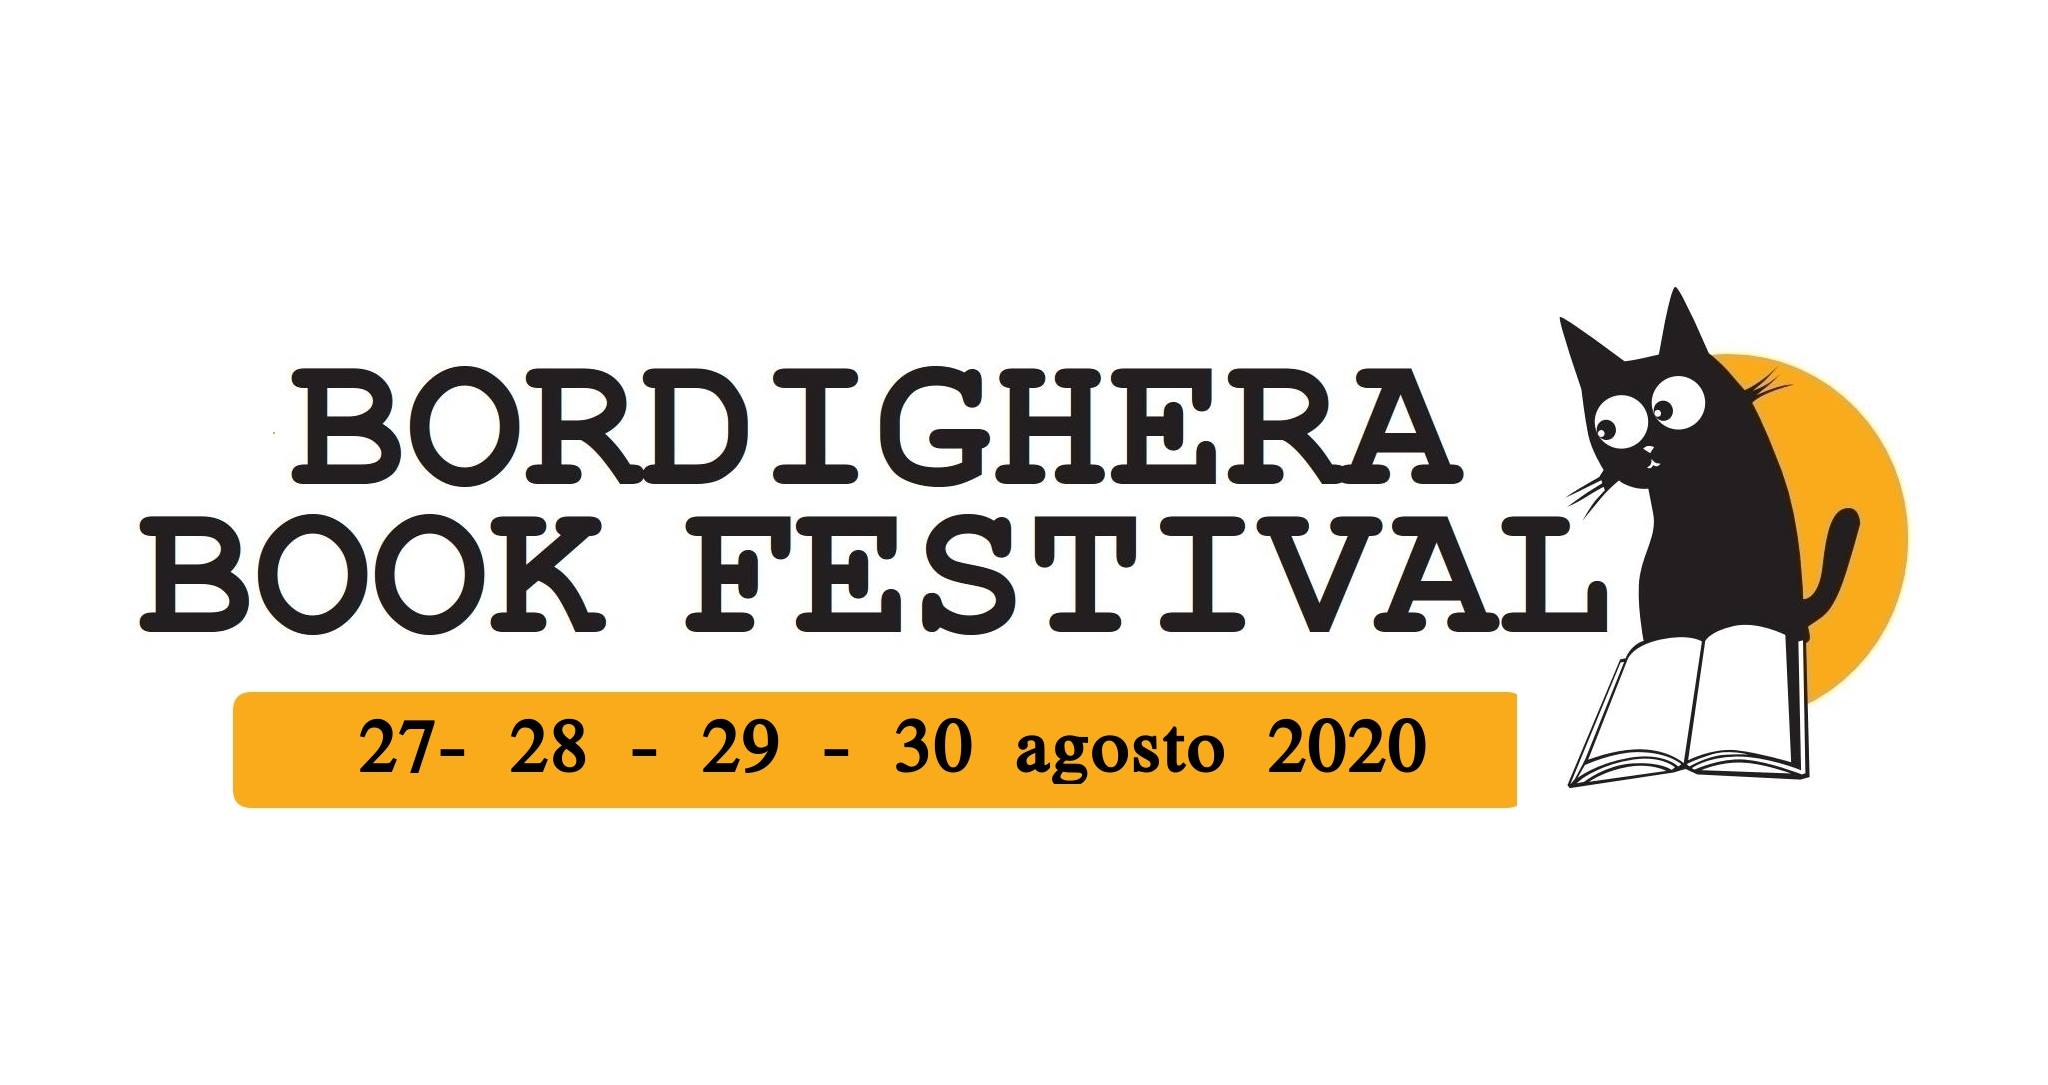 Bordighera book festival